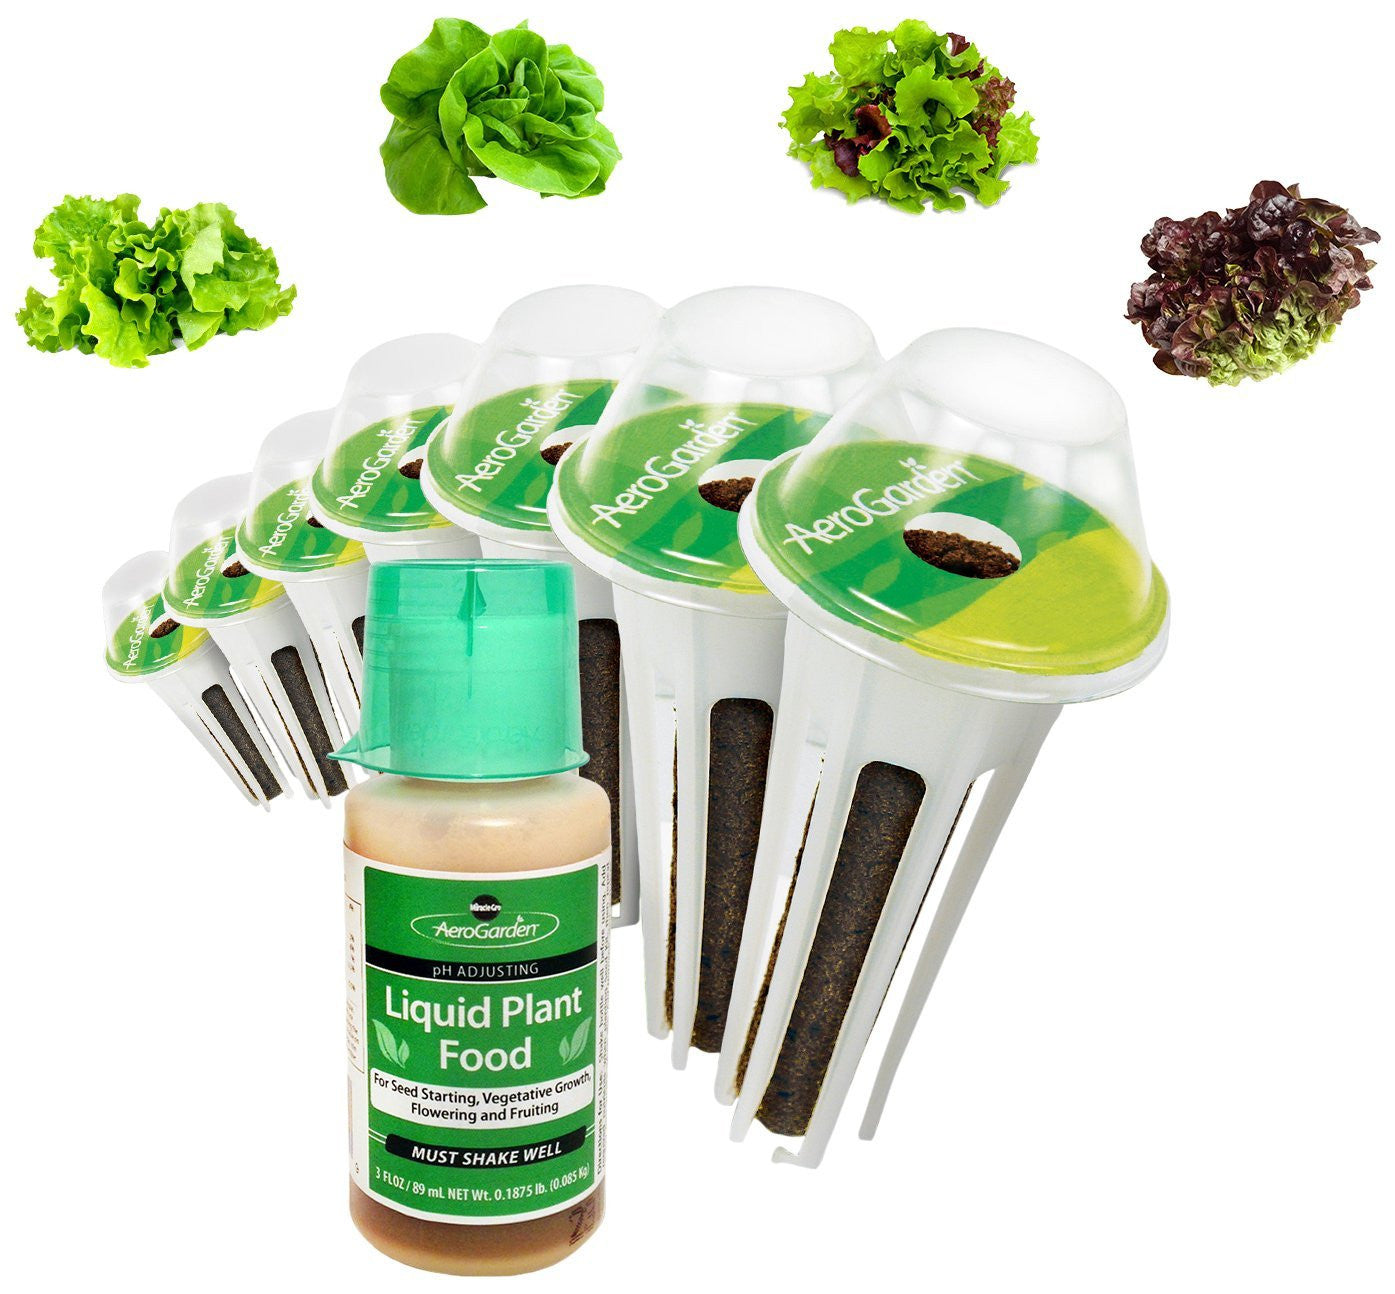 Miracle-Gro AeroGarden Salad Greens Mix Seed Pod Kit - EarthCitizen
